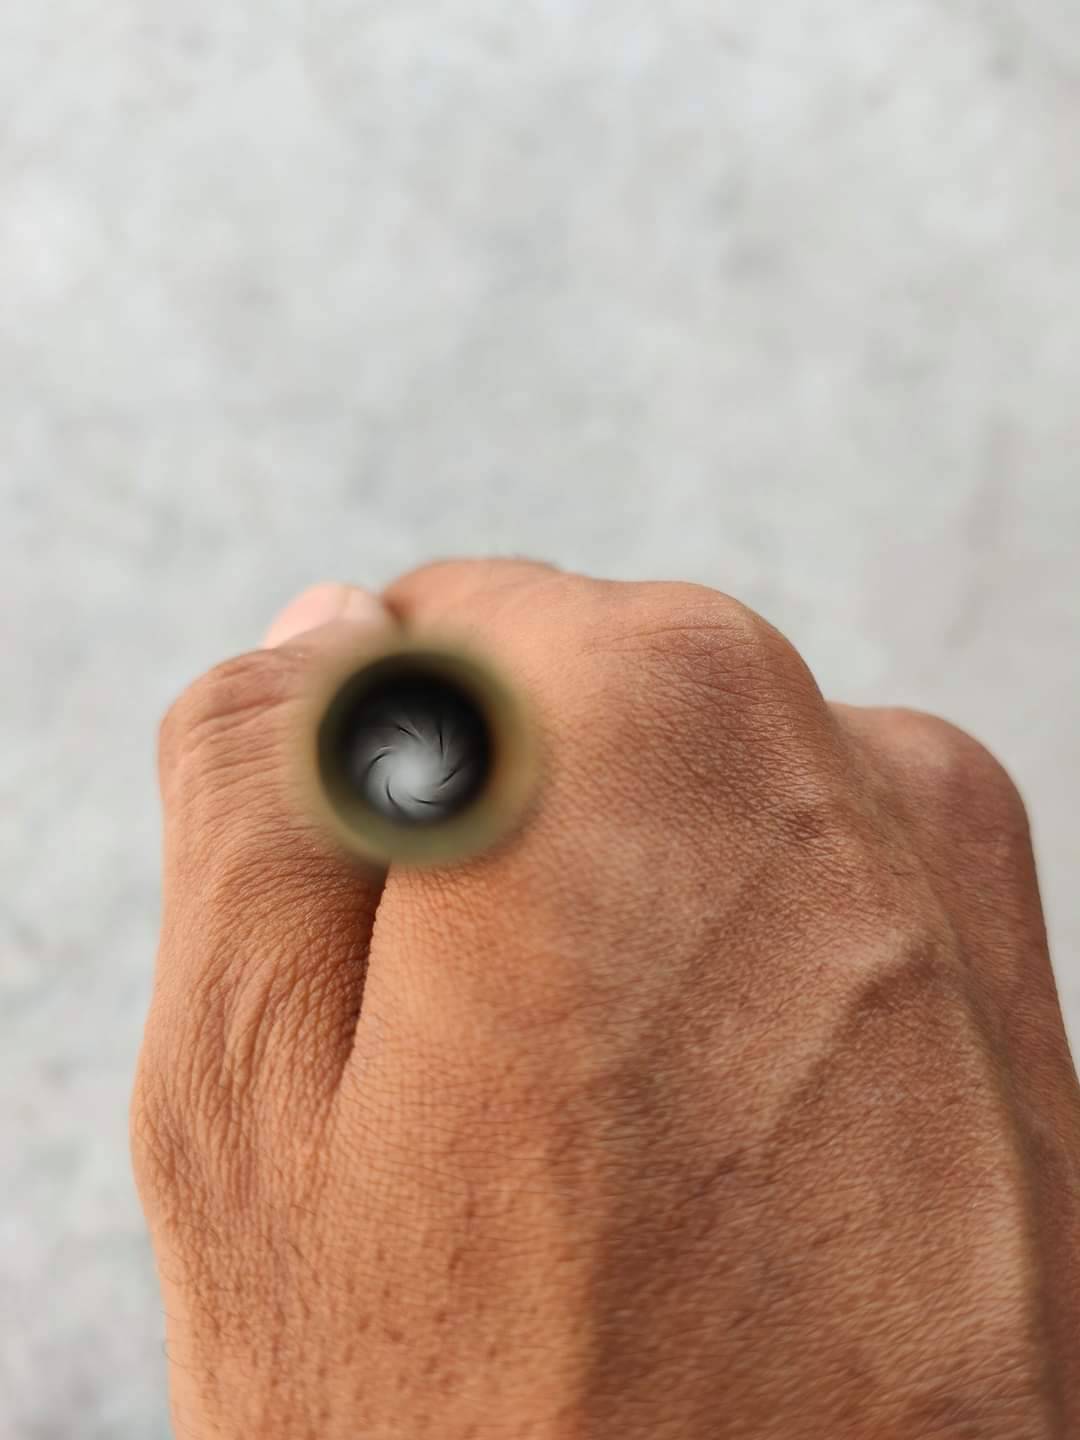 ทองเหลือง จิปาถะ เบอร์ 2 โต 8mm. ผลิตแบบพิเศษ ร่องกว้างกว่าสันเกลียว สั่งตัดความยาวได้  แบบ 6,10,12 เกลียว